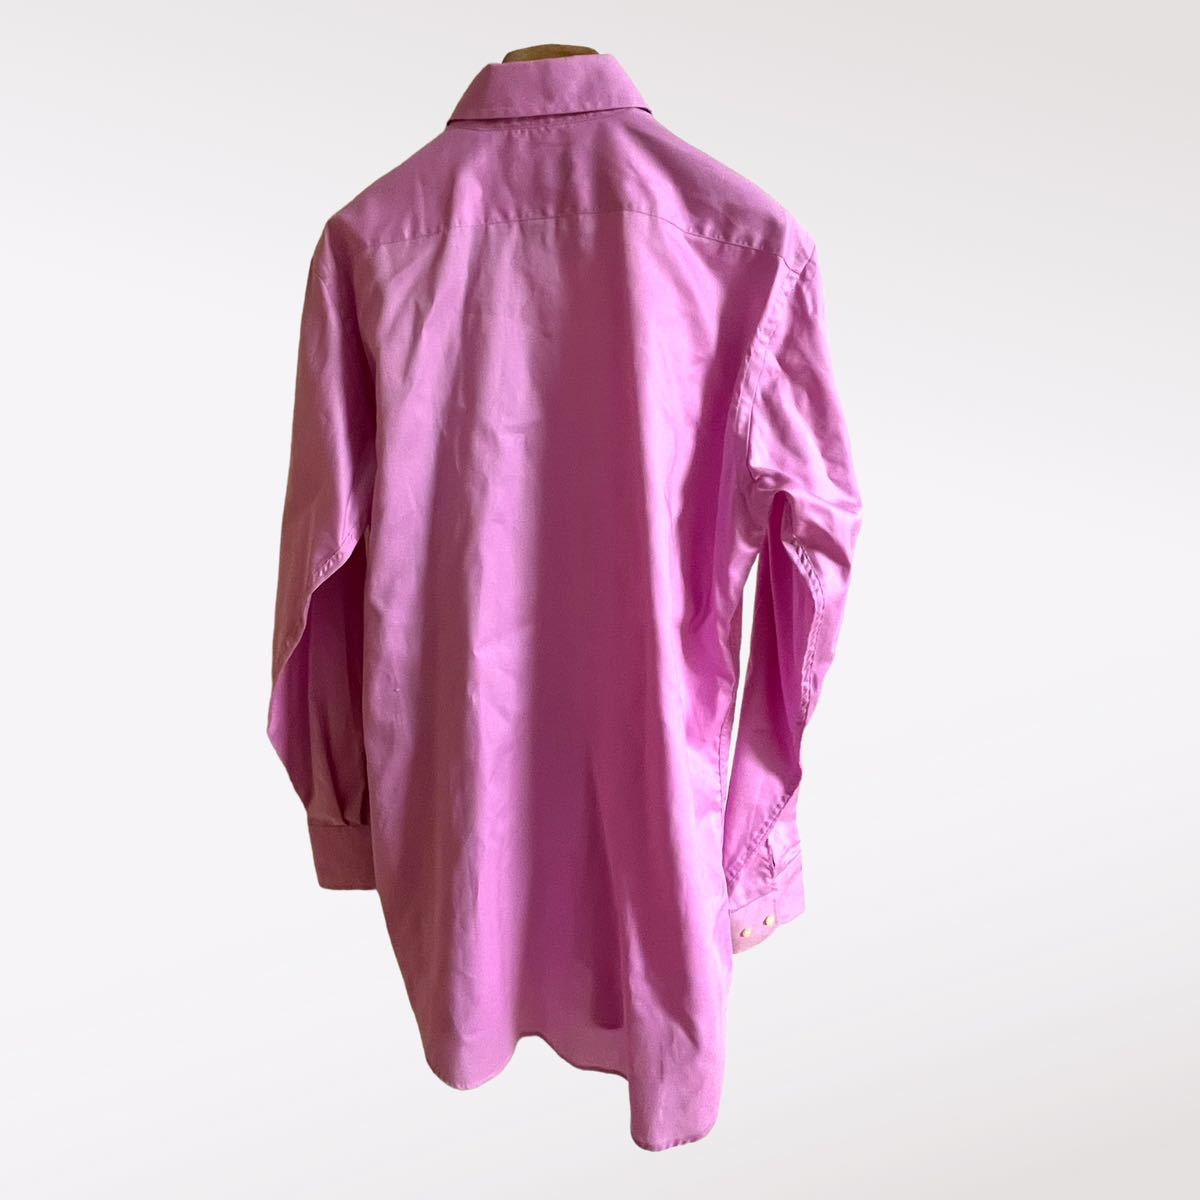 ETRO Etro long sleeve du evo to-ni shirt pink Italy made 41 size 